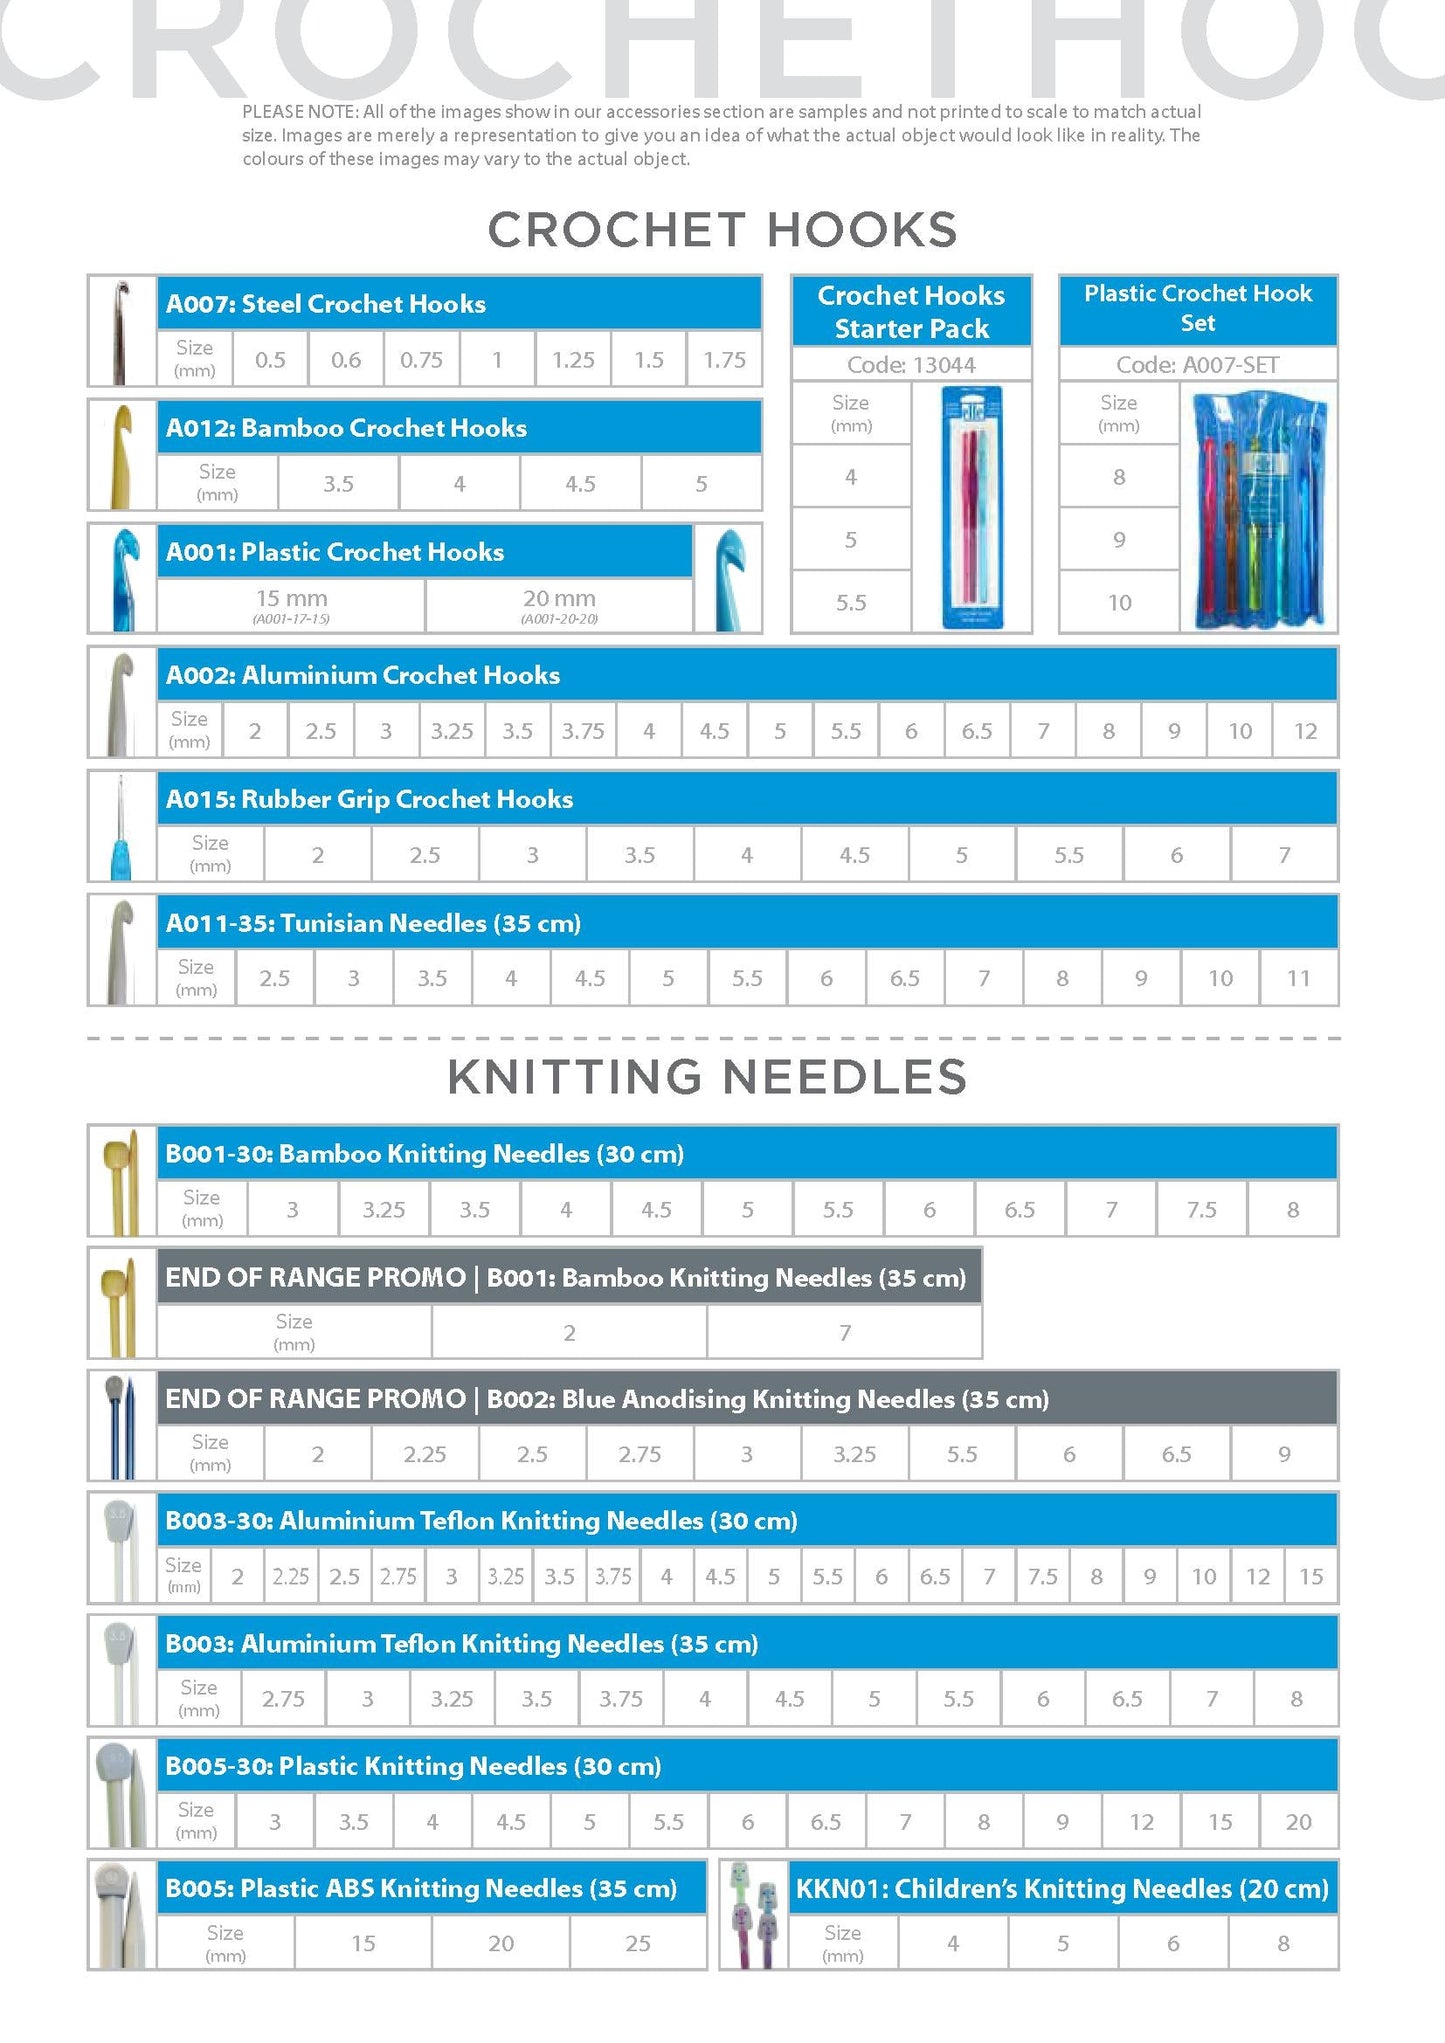 Plastic Knitting Needles 35cm